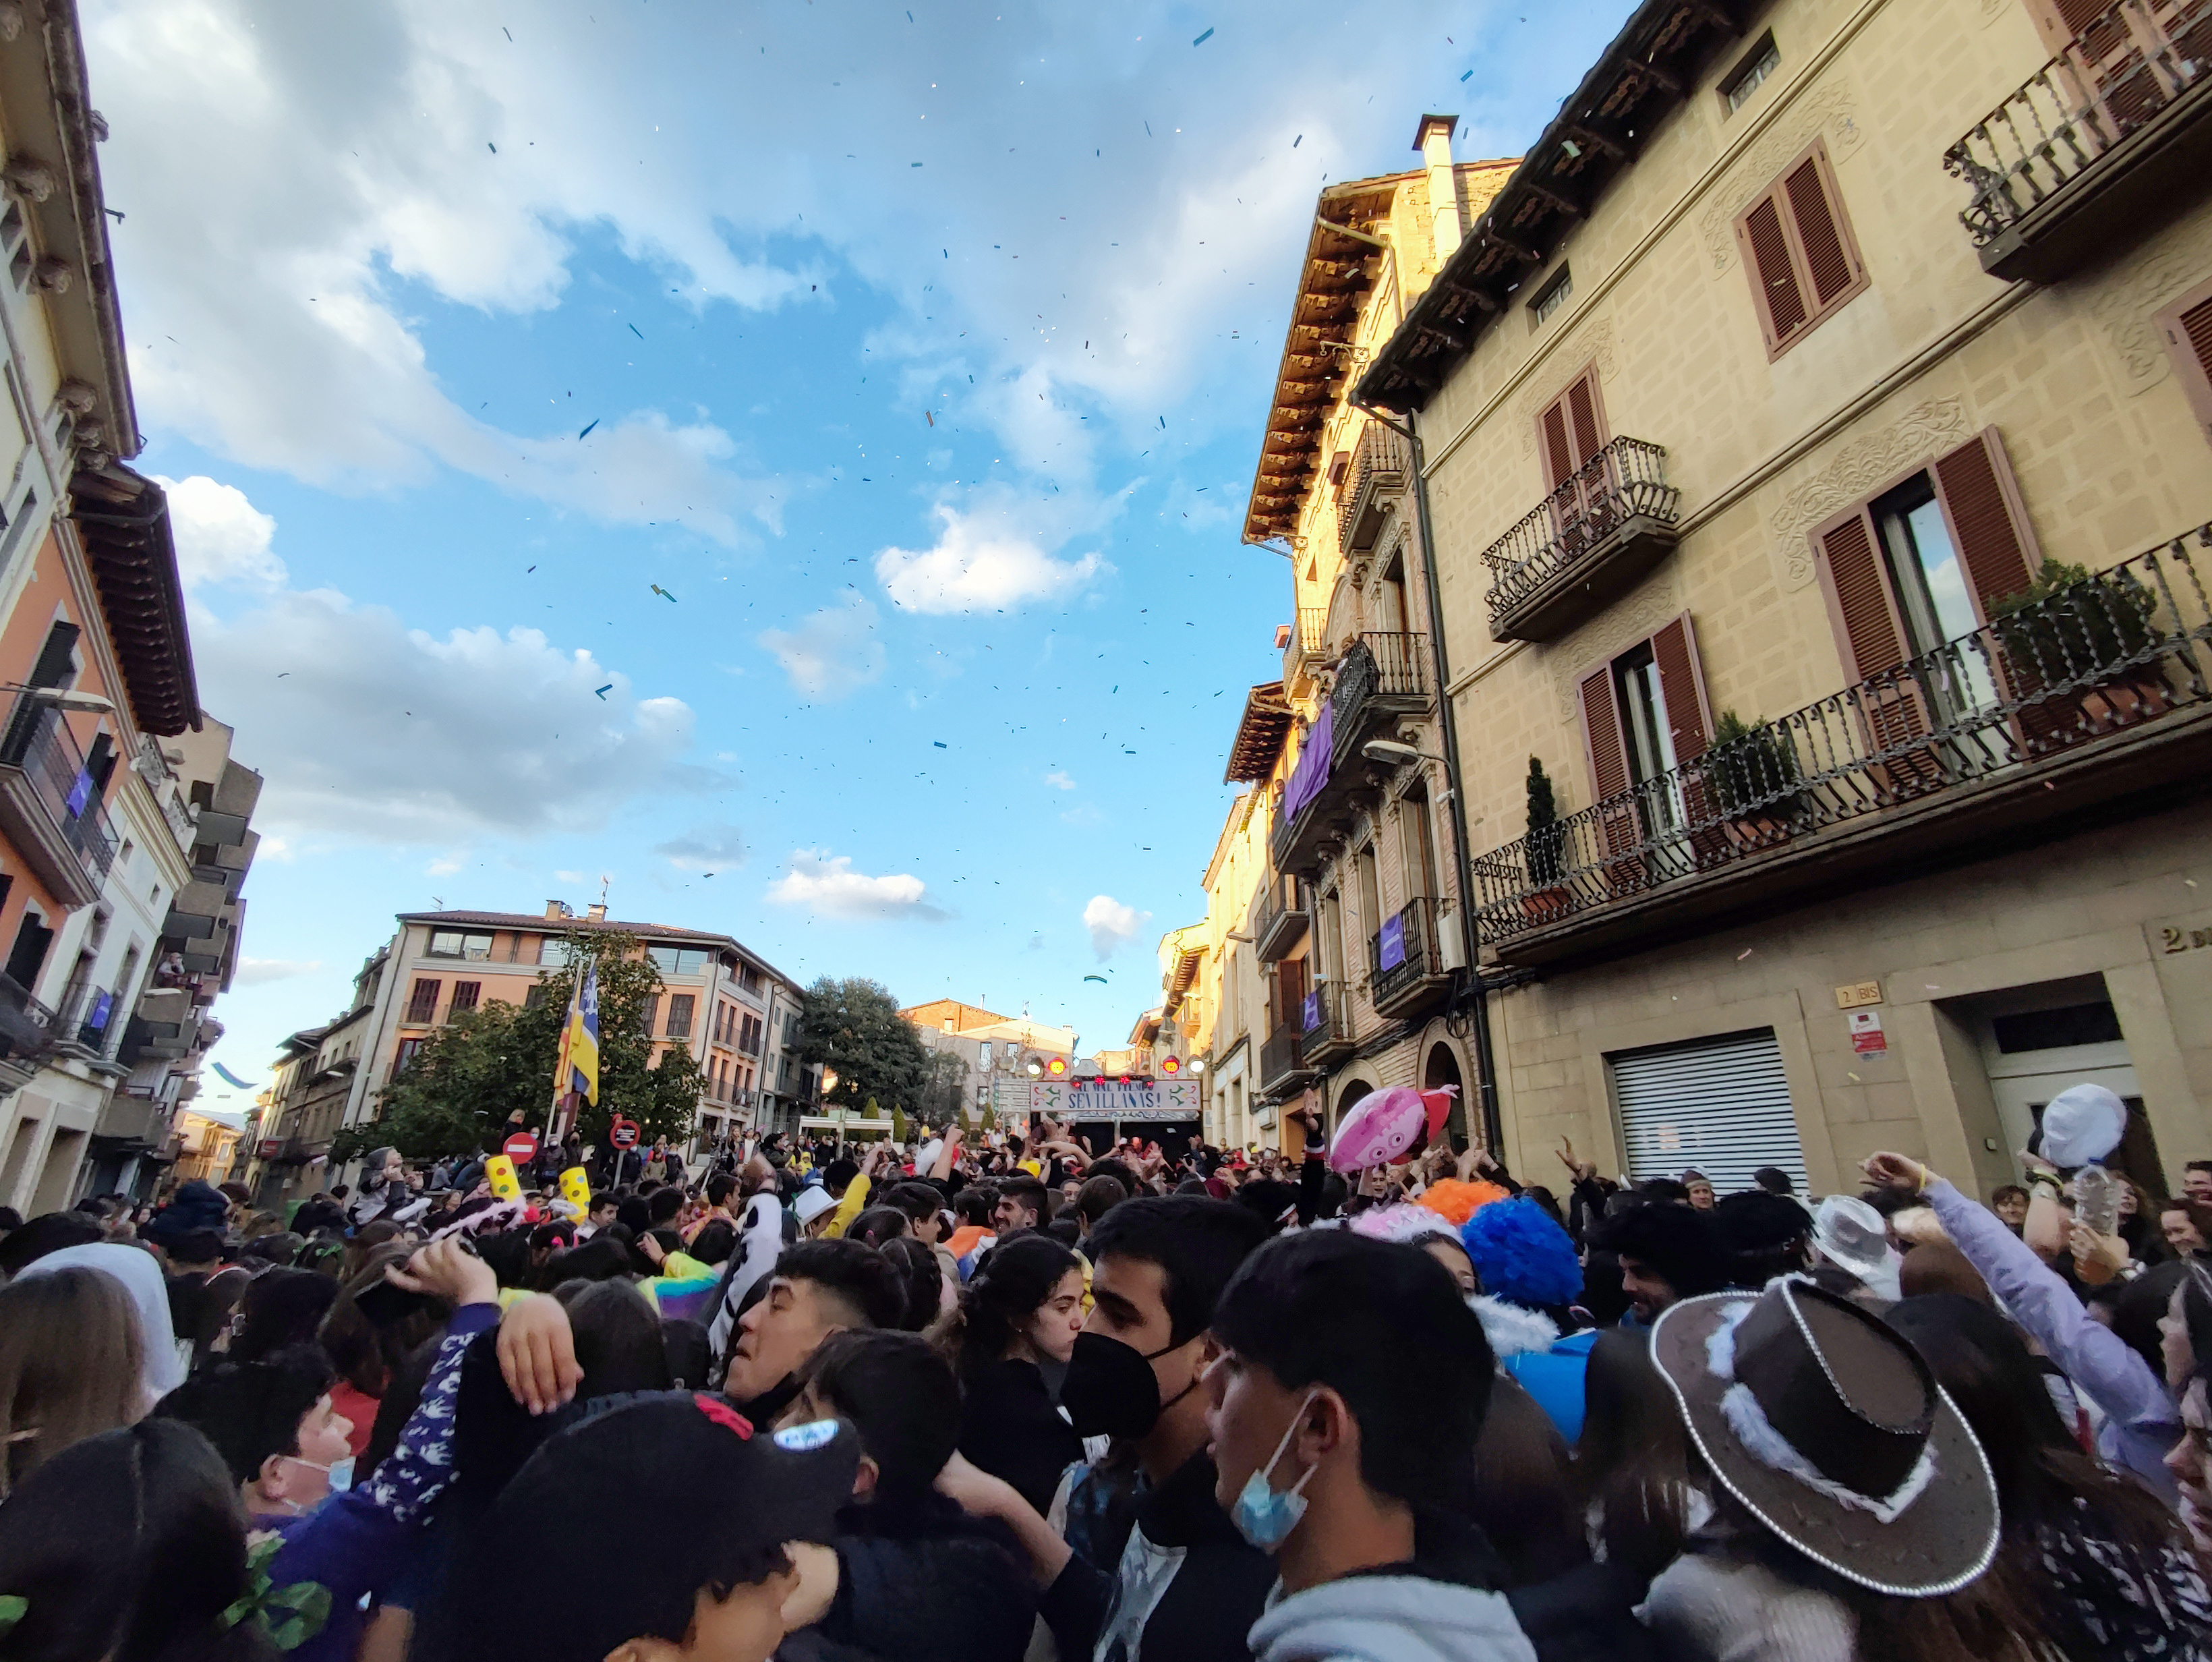 Els carrers de Roda s'omplen de disbauxa en un Carnaval molt participat